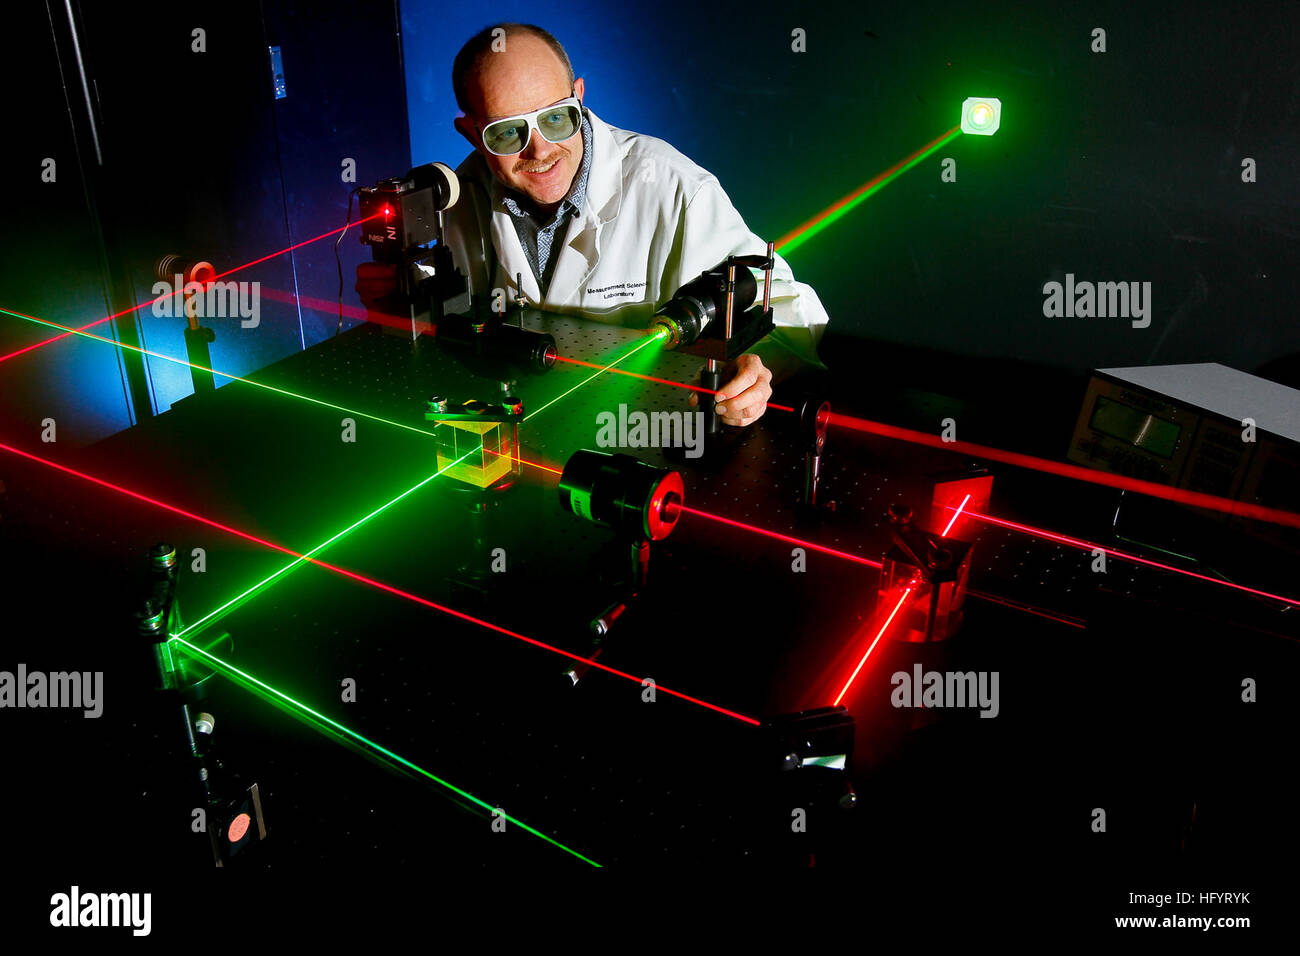 Laser a microonde immagini e fotografie stock ad alta risoluzione - Alamy